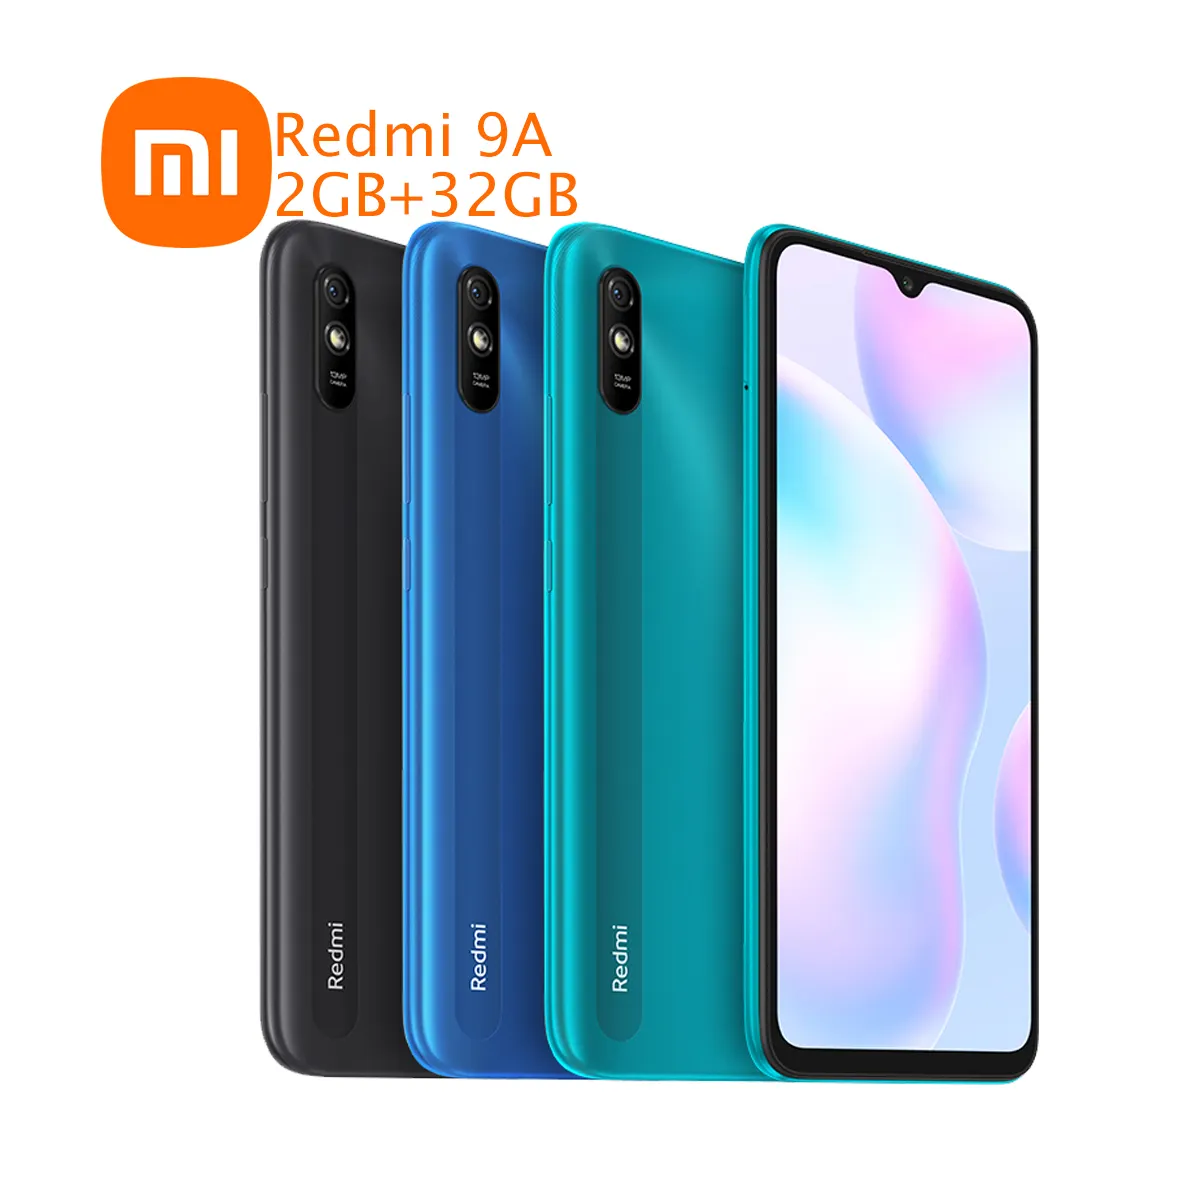 Mi Redmi9A 2GB+32GB 6.53" 5020mAh Smart Mobile Phone